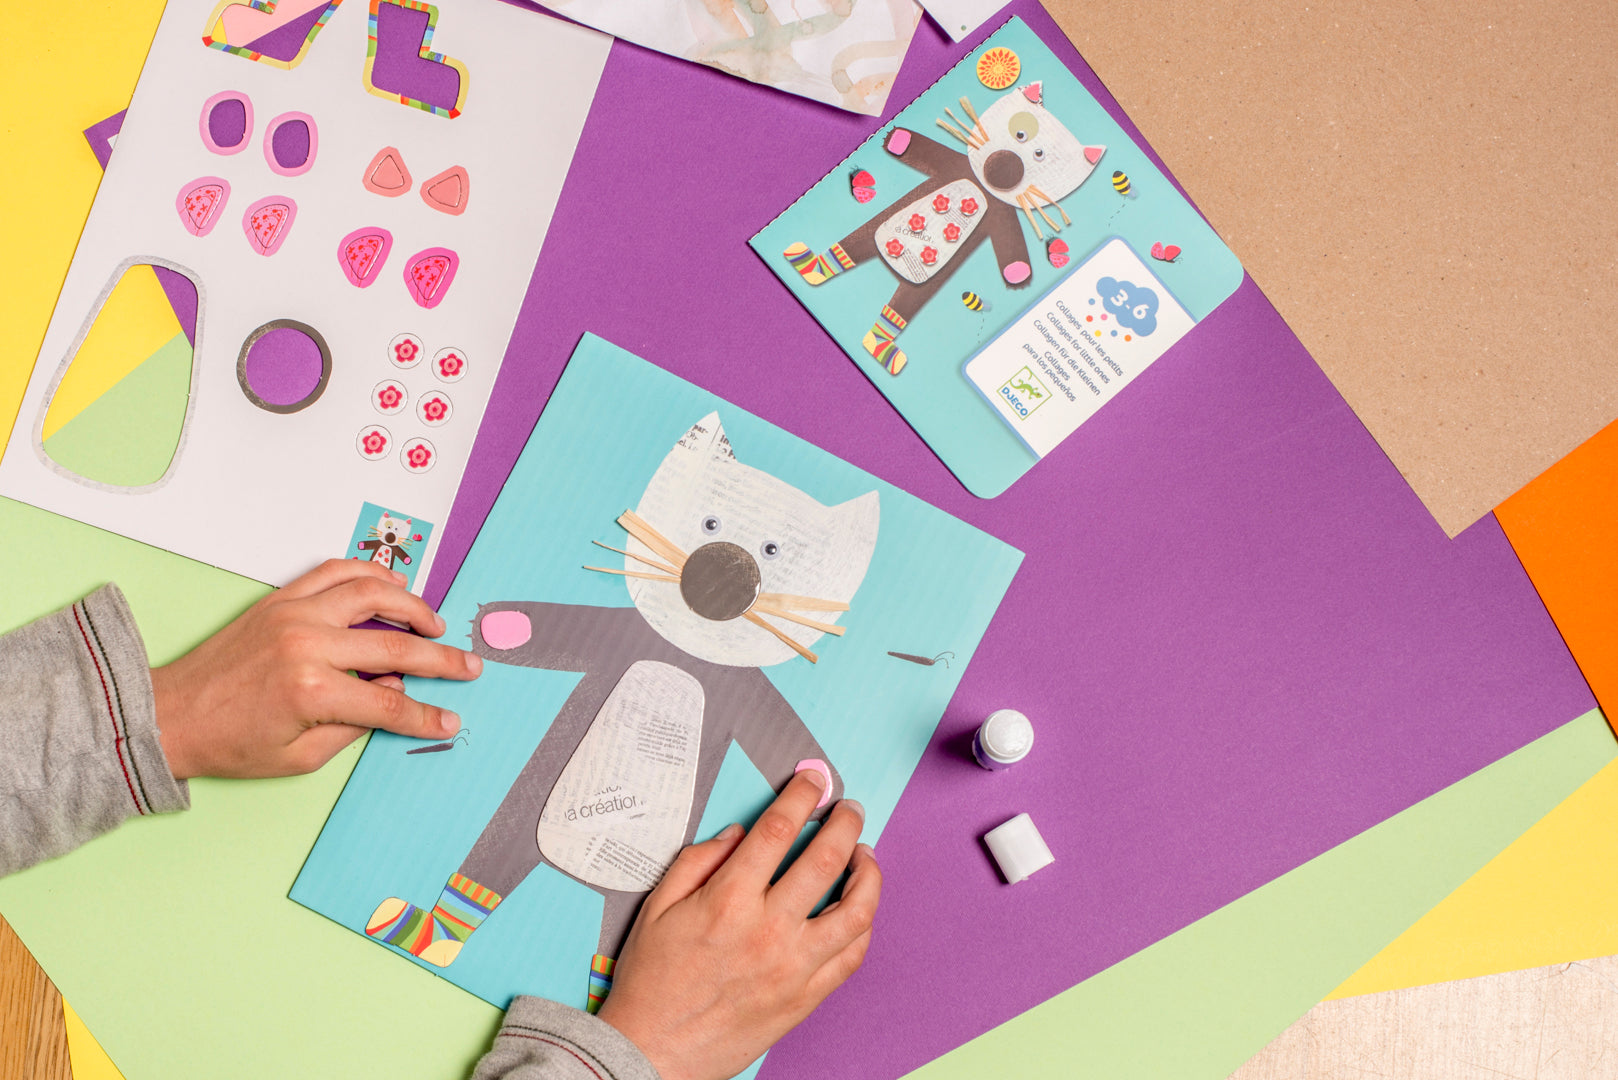 Caja para crear - Manualidades creativas - Djeco – Serendipia Toys